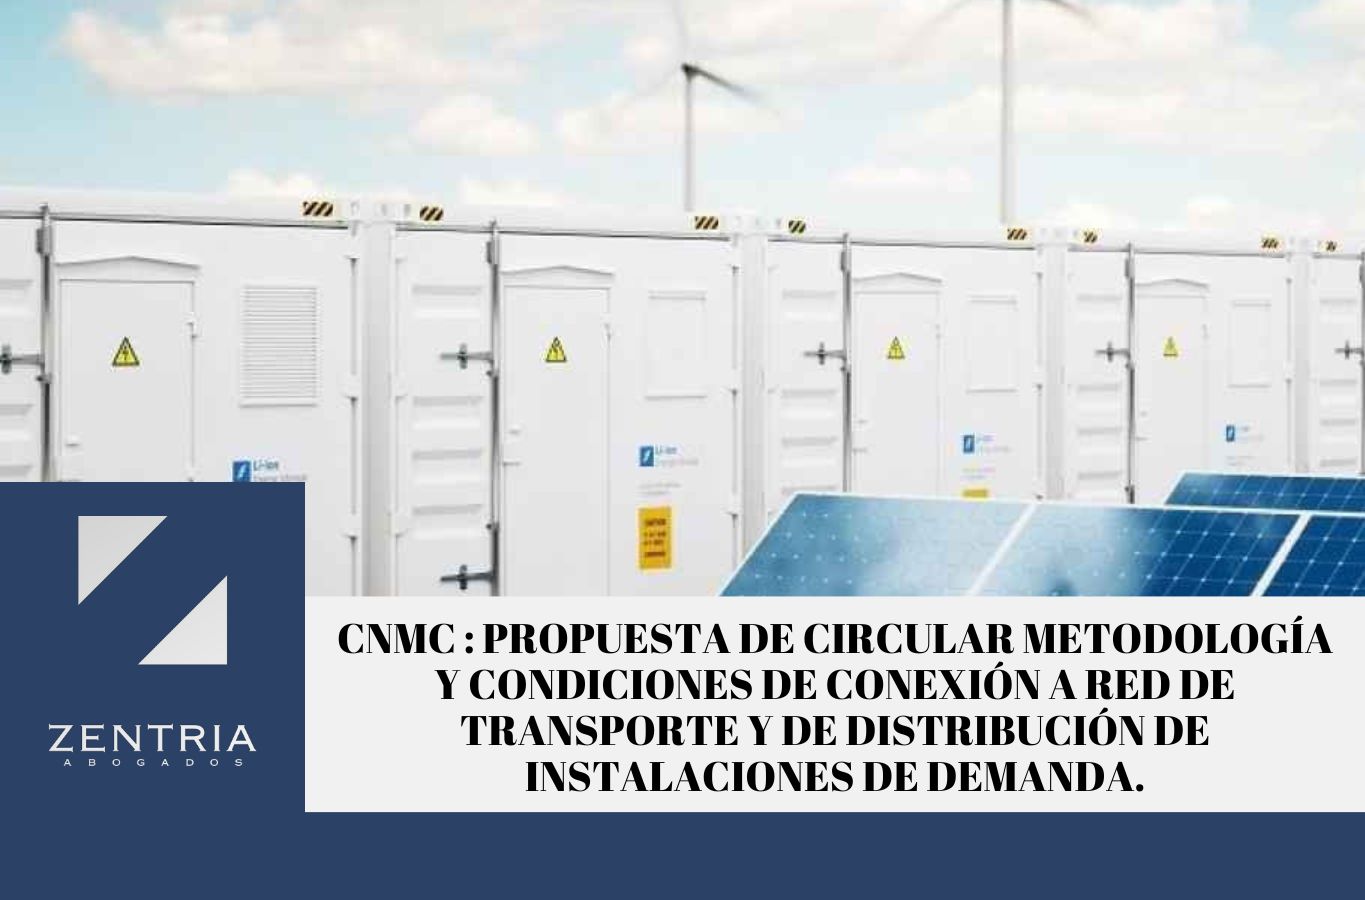 Zentria Abogados - CNMC. Propuesta de Circular Metodología y condiciones de conexión a red de transporte y de distribución de instalaciones de demanda